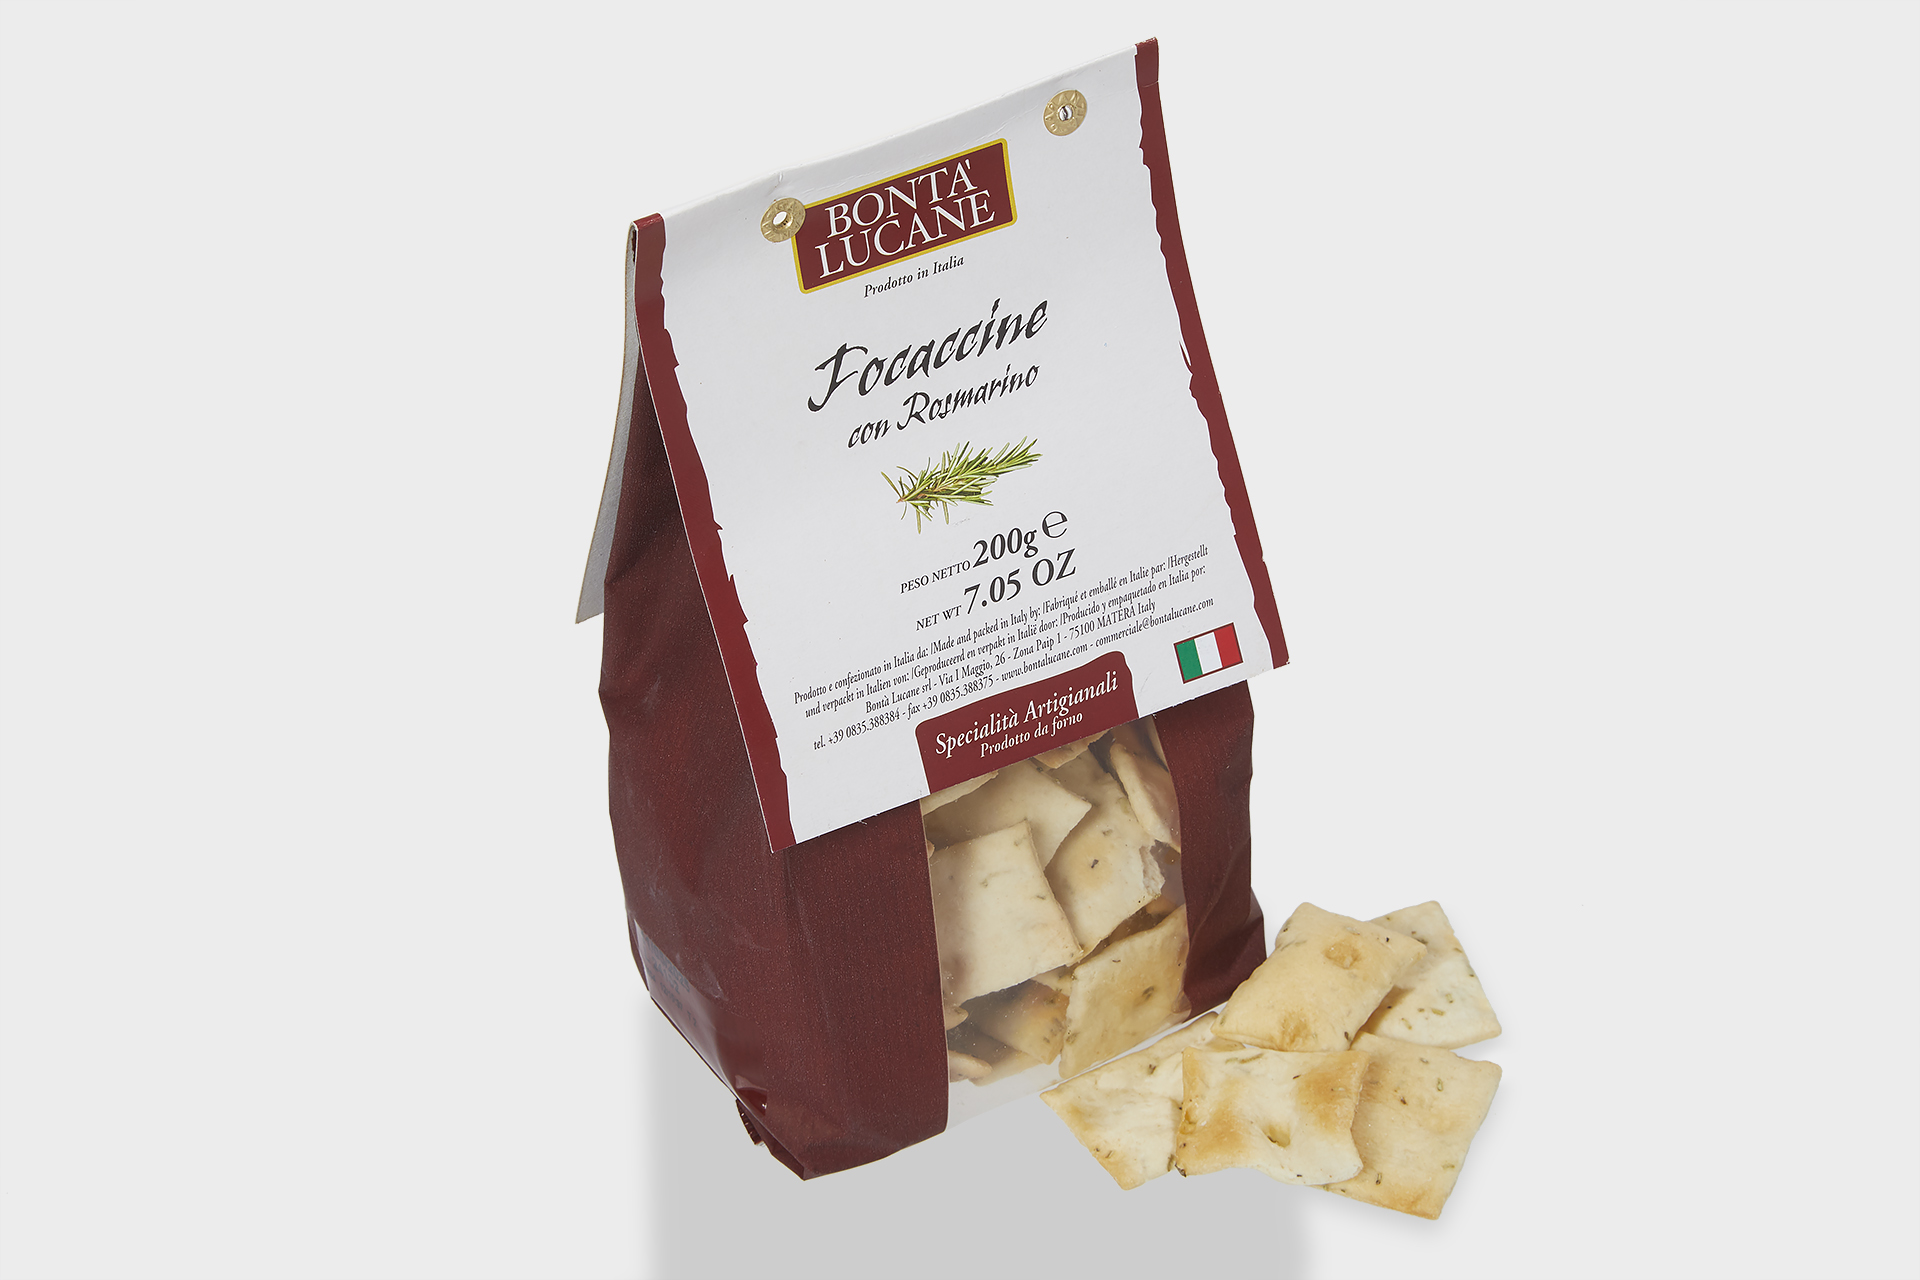 Foccacina rosmarino Chips og brushetta Lowin